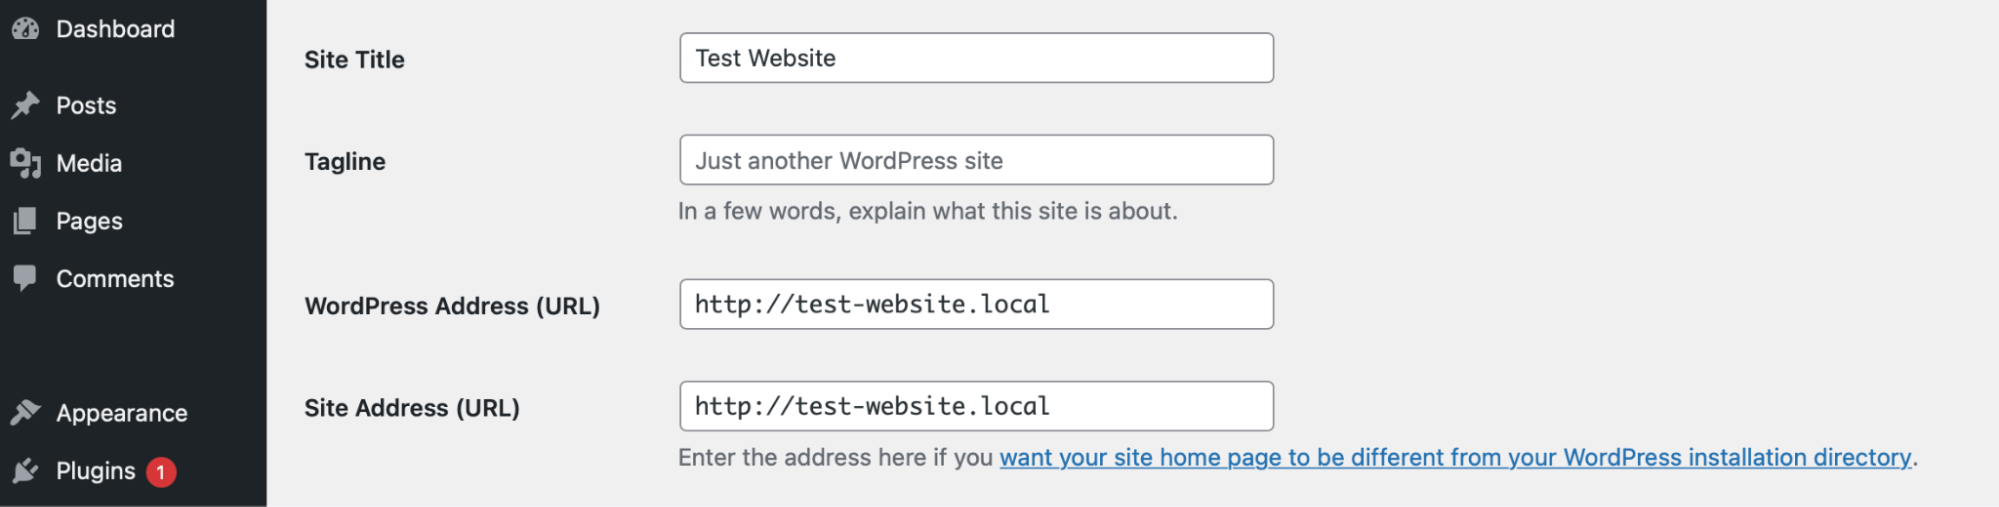 обновление адресов WordPress и сайта внутри панели управления